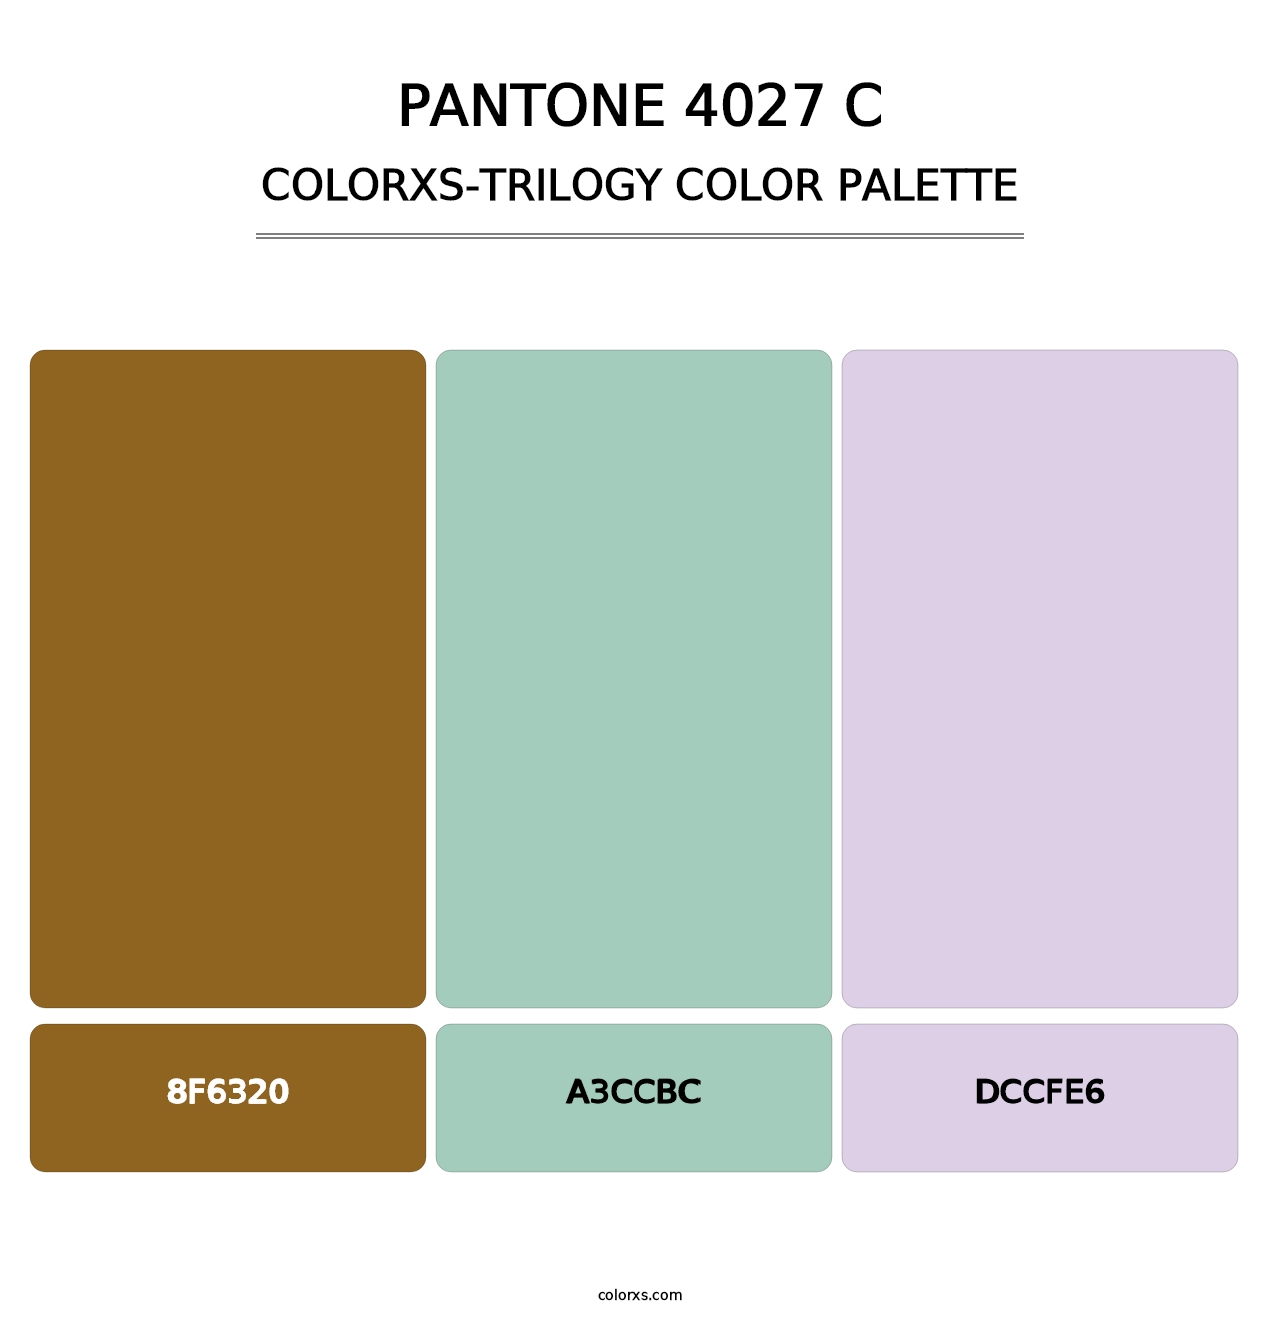 PANTONE 4027 C - Colorxs Trilogy Palette